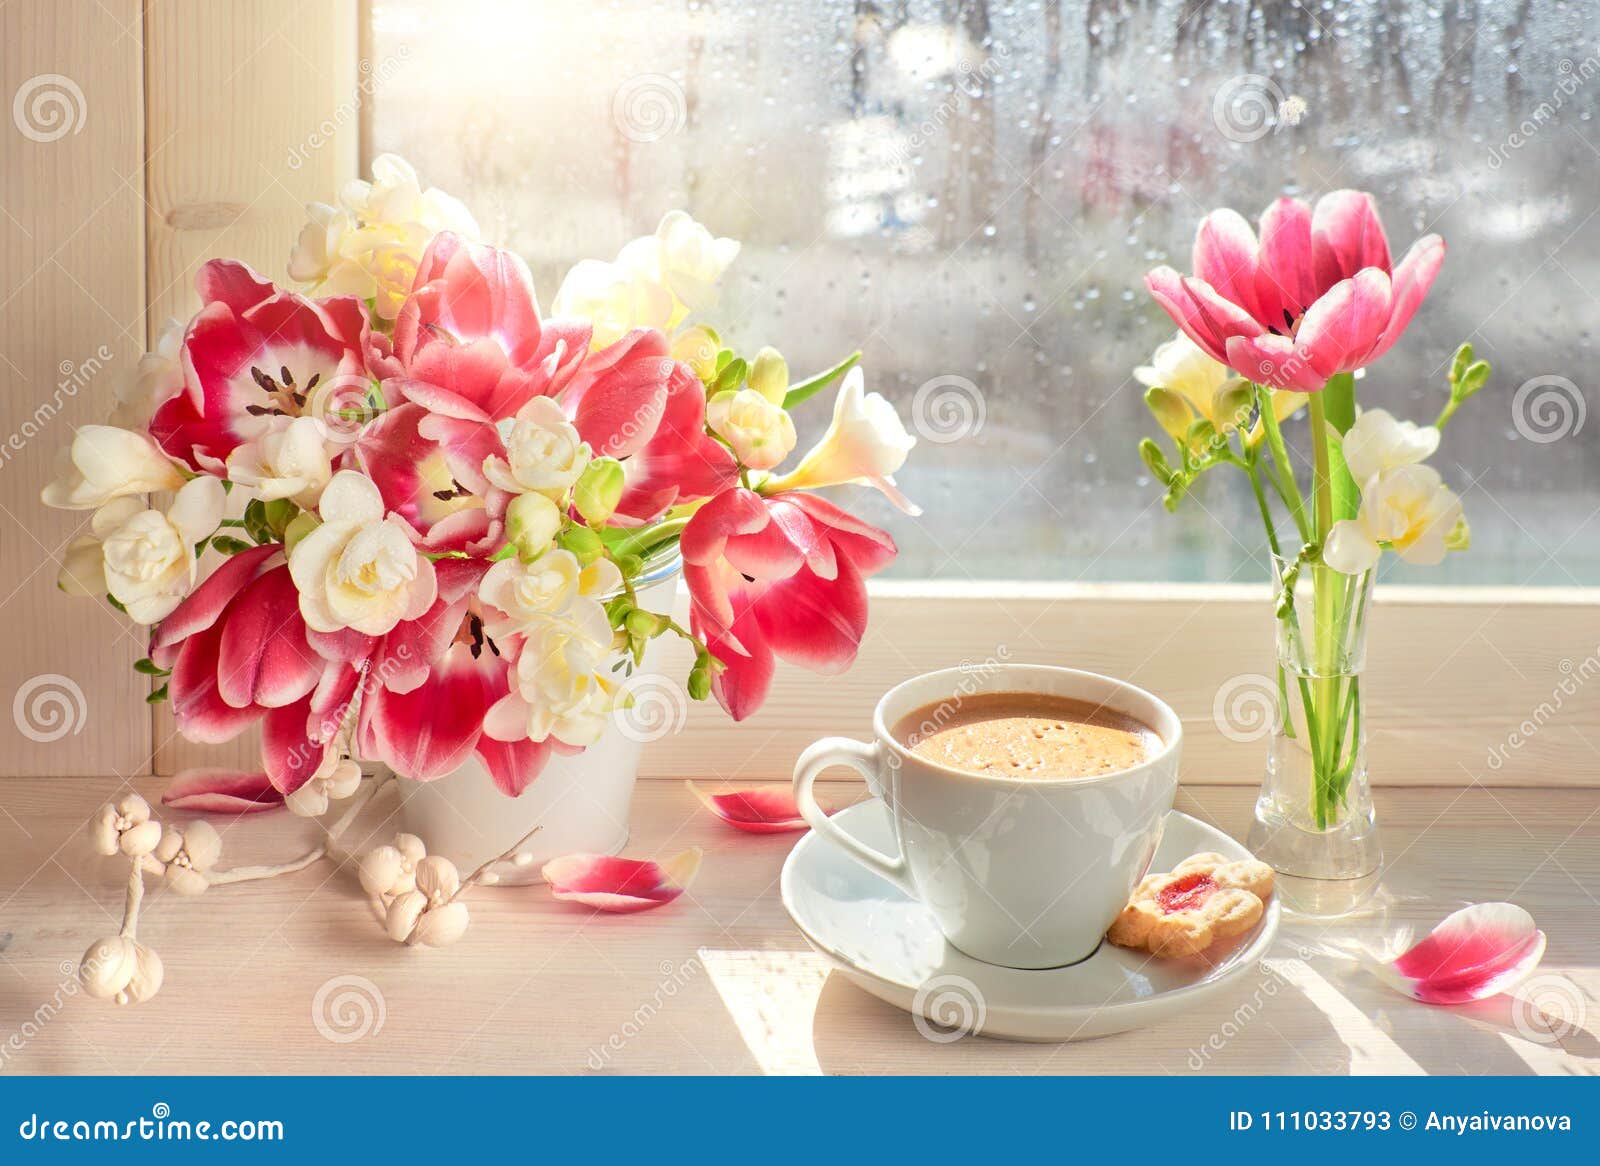 Rosenthal / #R Tulpe NEU Kaffee-Teetasse Blumen RAR 